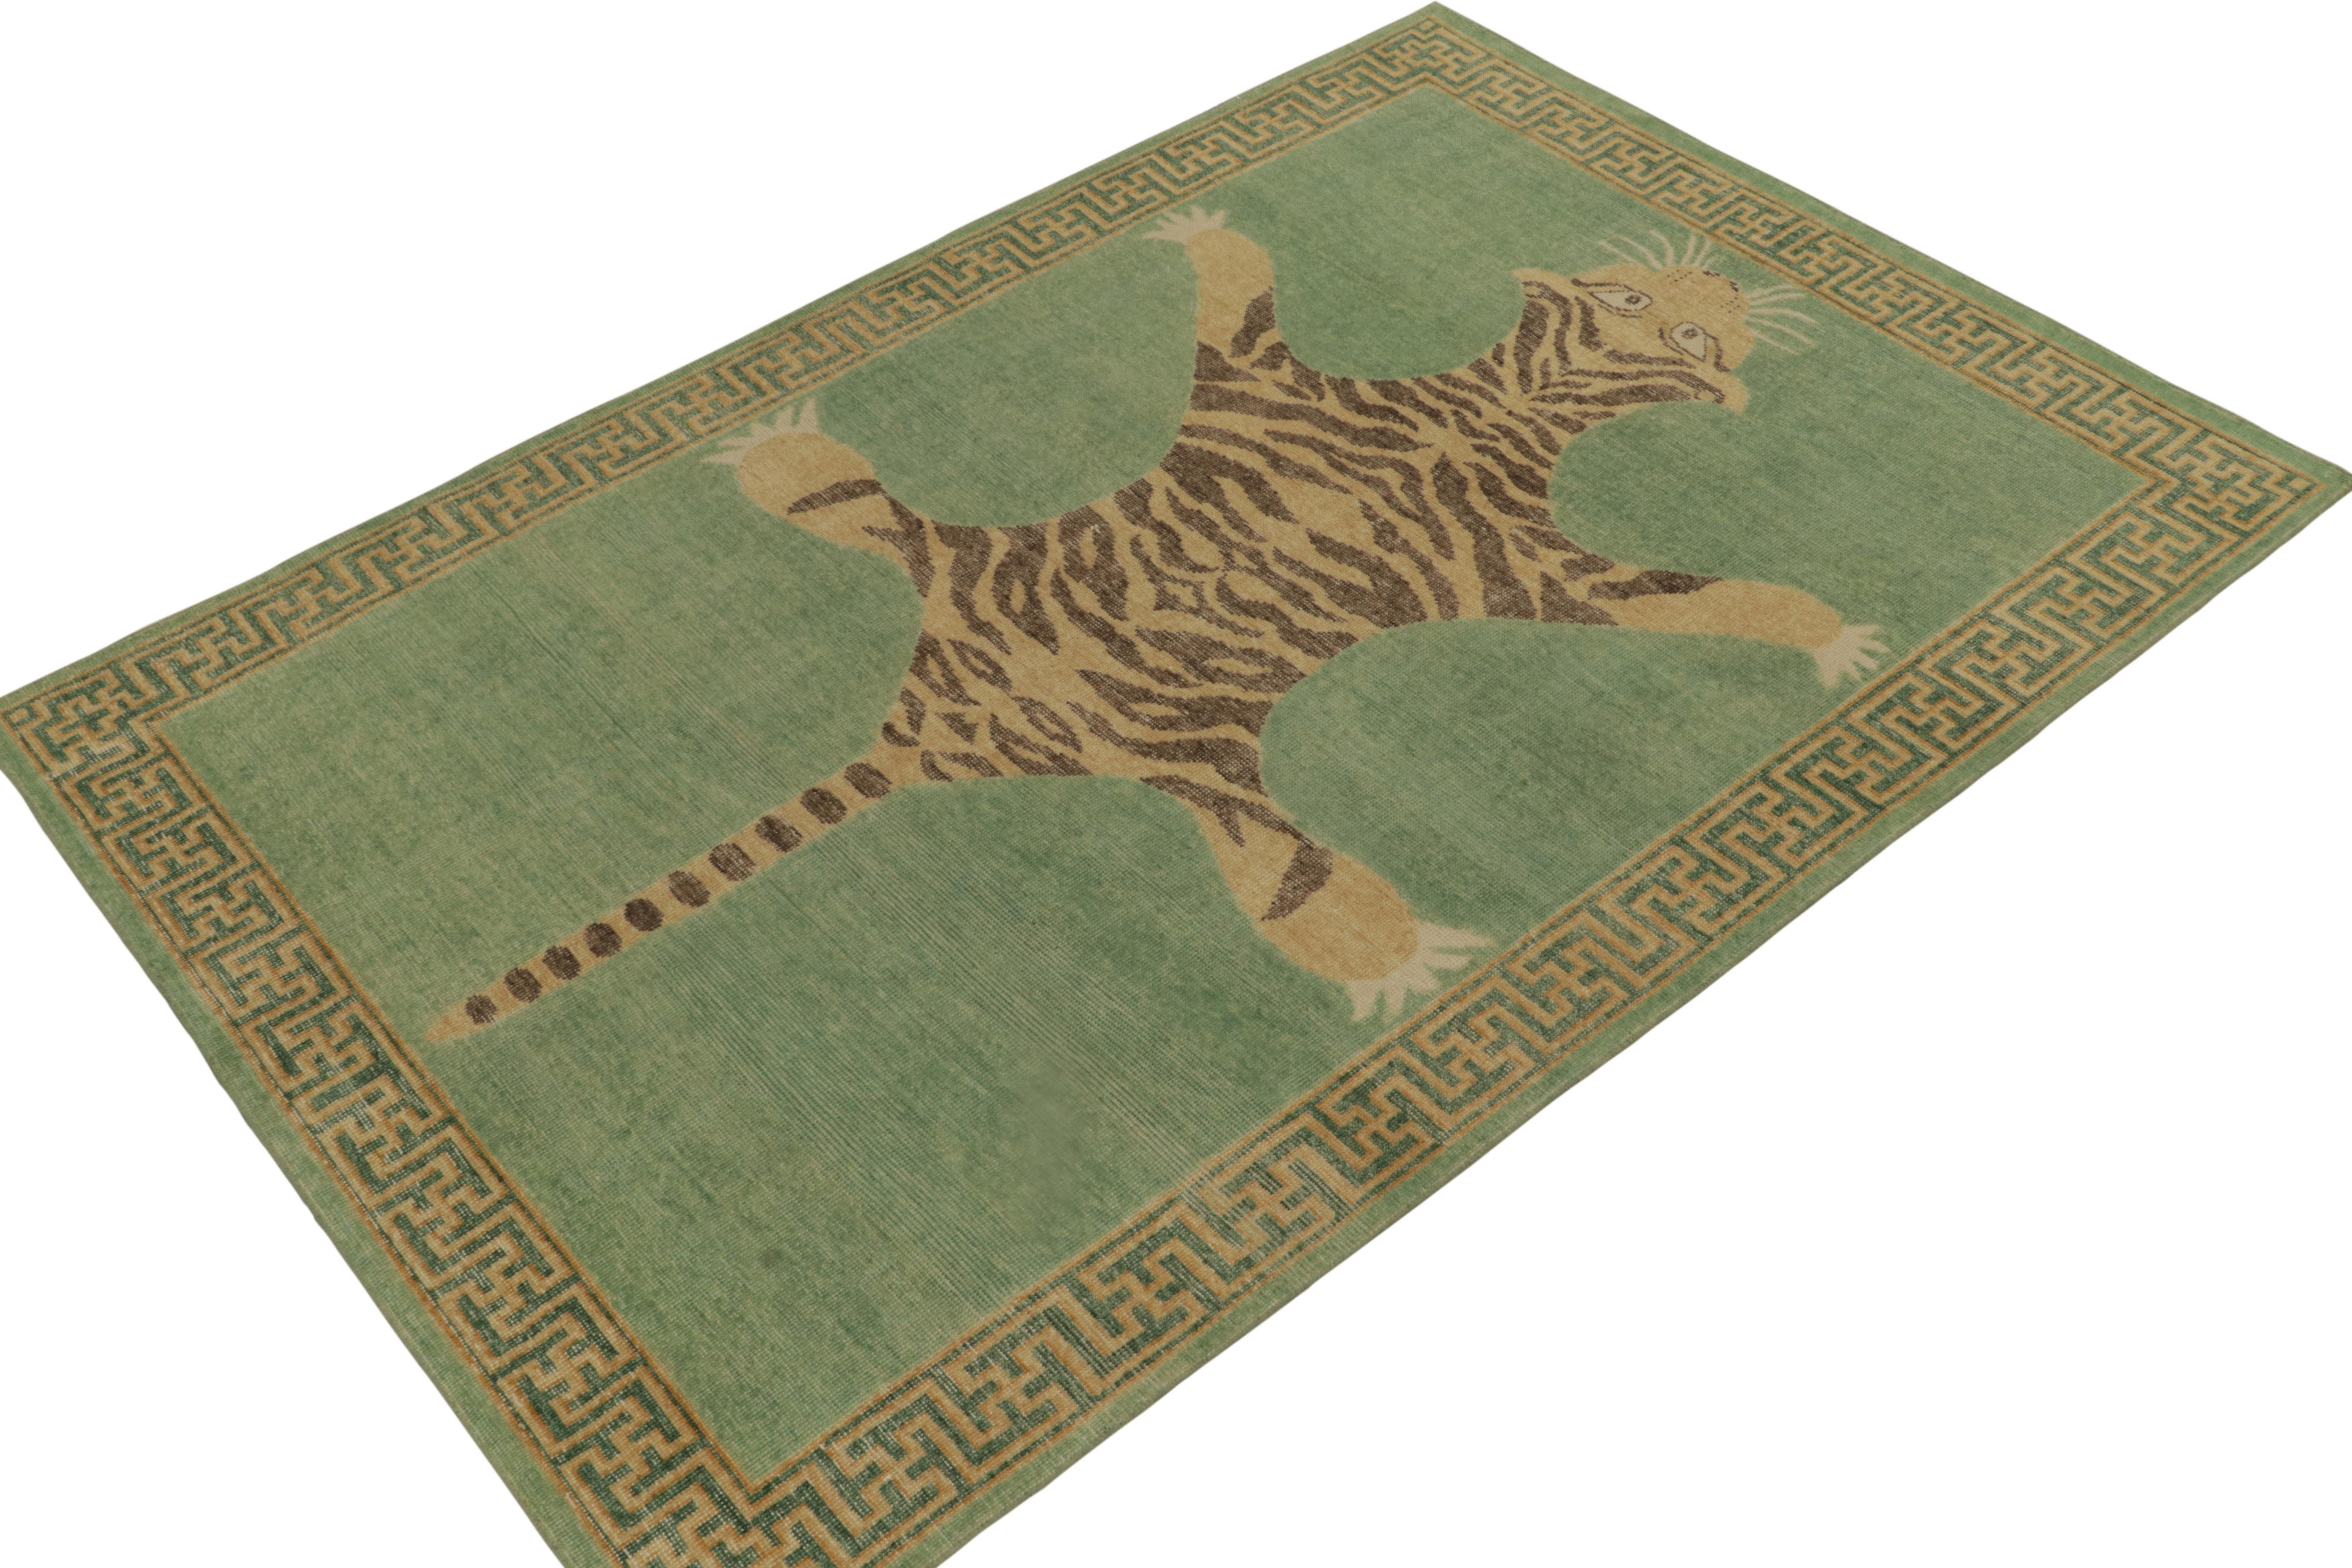 De la collection Homage de Rug & Kilim, une pièce de 6x9 en laine nouée à la main qui reprend le tapis en peau de tigre dans toute sa gloire. 

Sur le design : Cette pièce s'inspire d'anciens tapis indiens en peau de tigre à la présence royale et